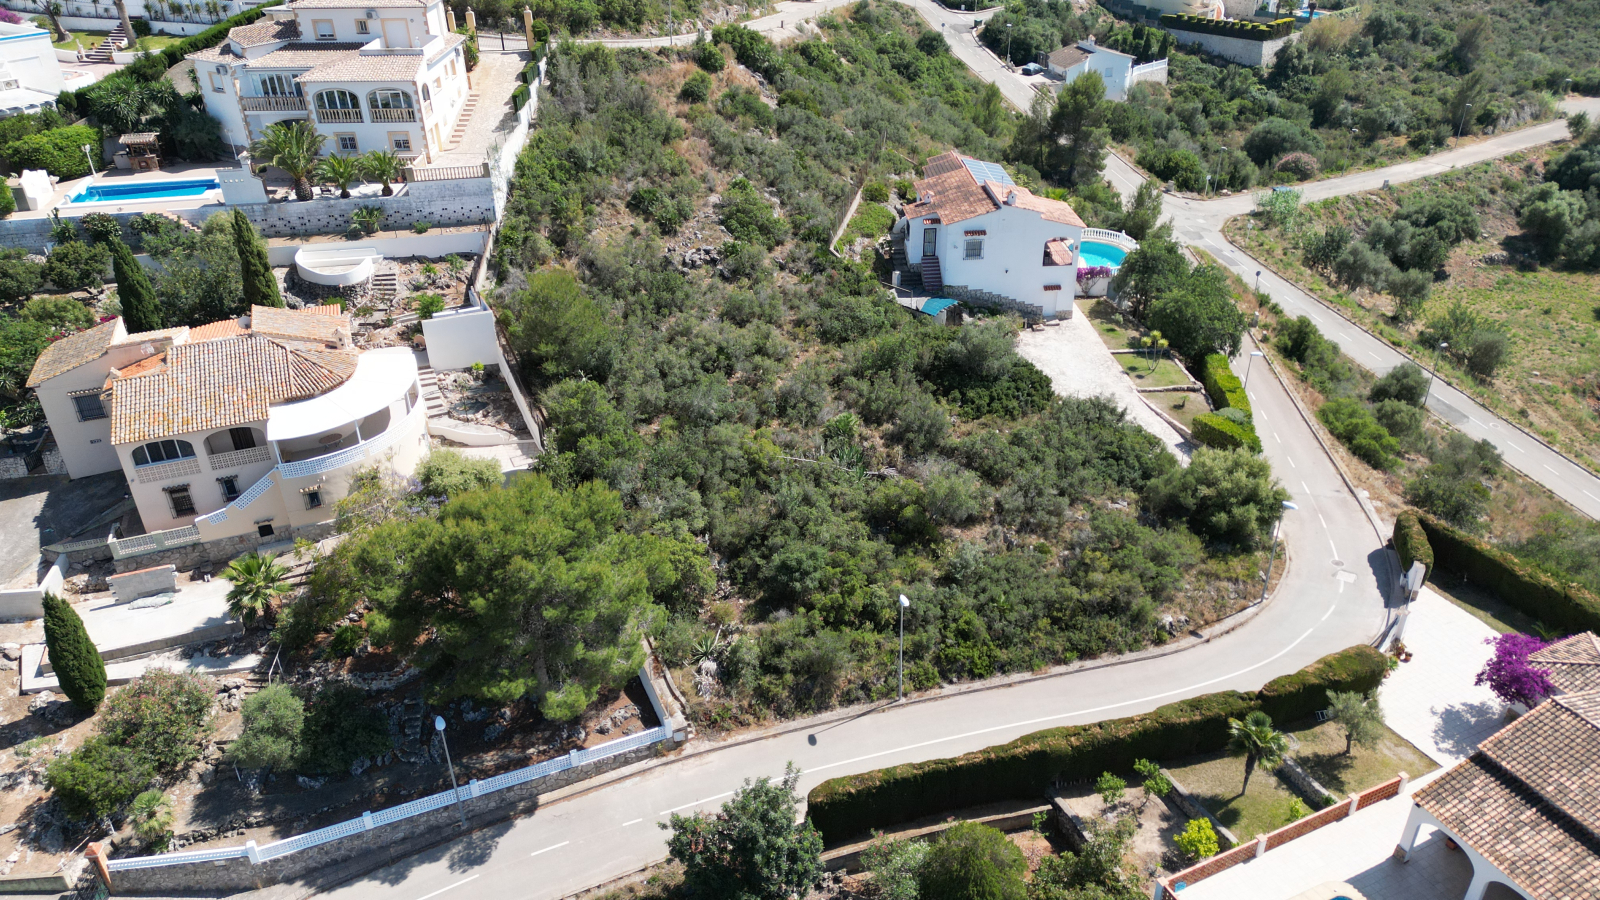 Mooie bouwgrond in Oliva, vlakbij het voorjaar Font Salada, op toplocatie met panoramisch uitzicht.